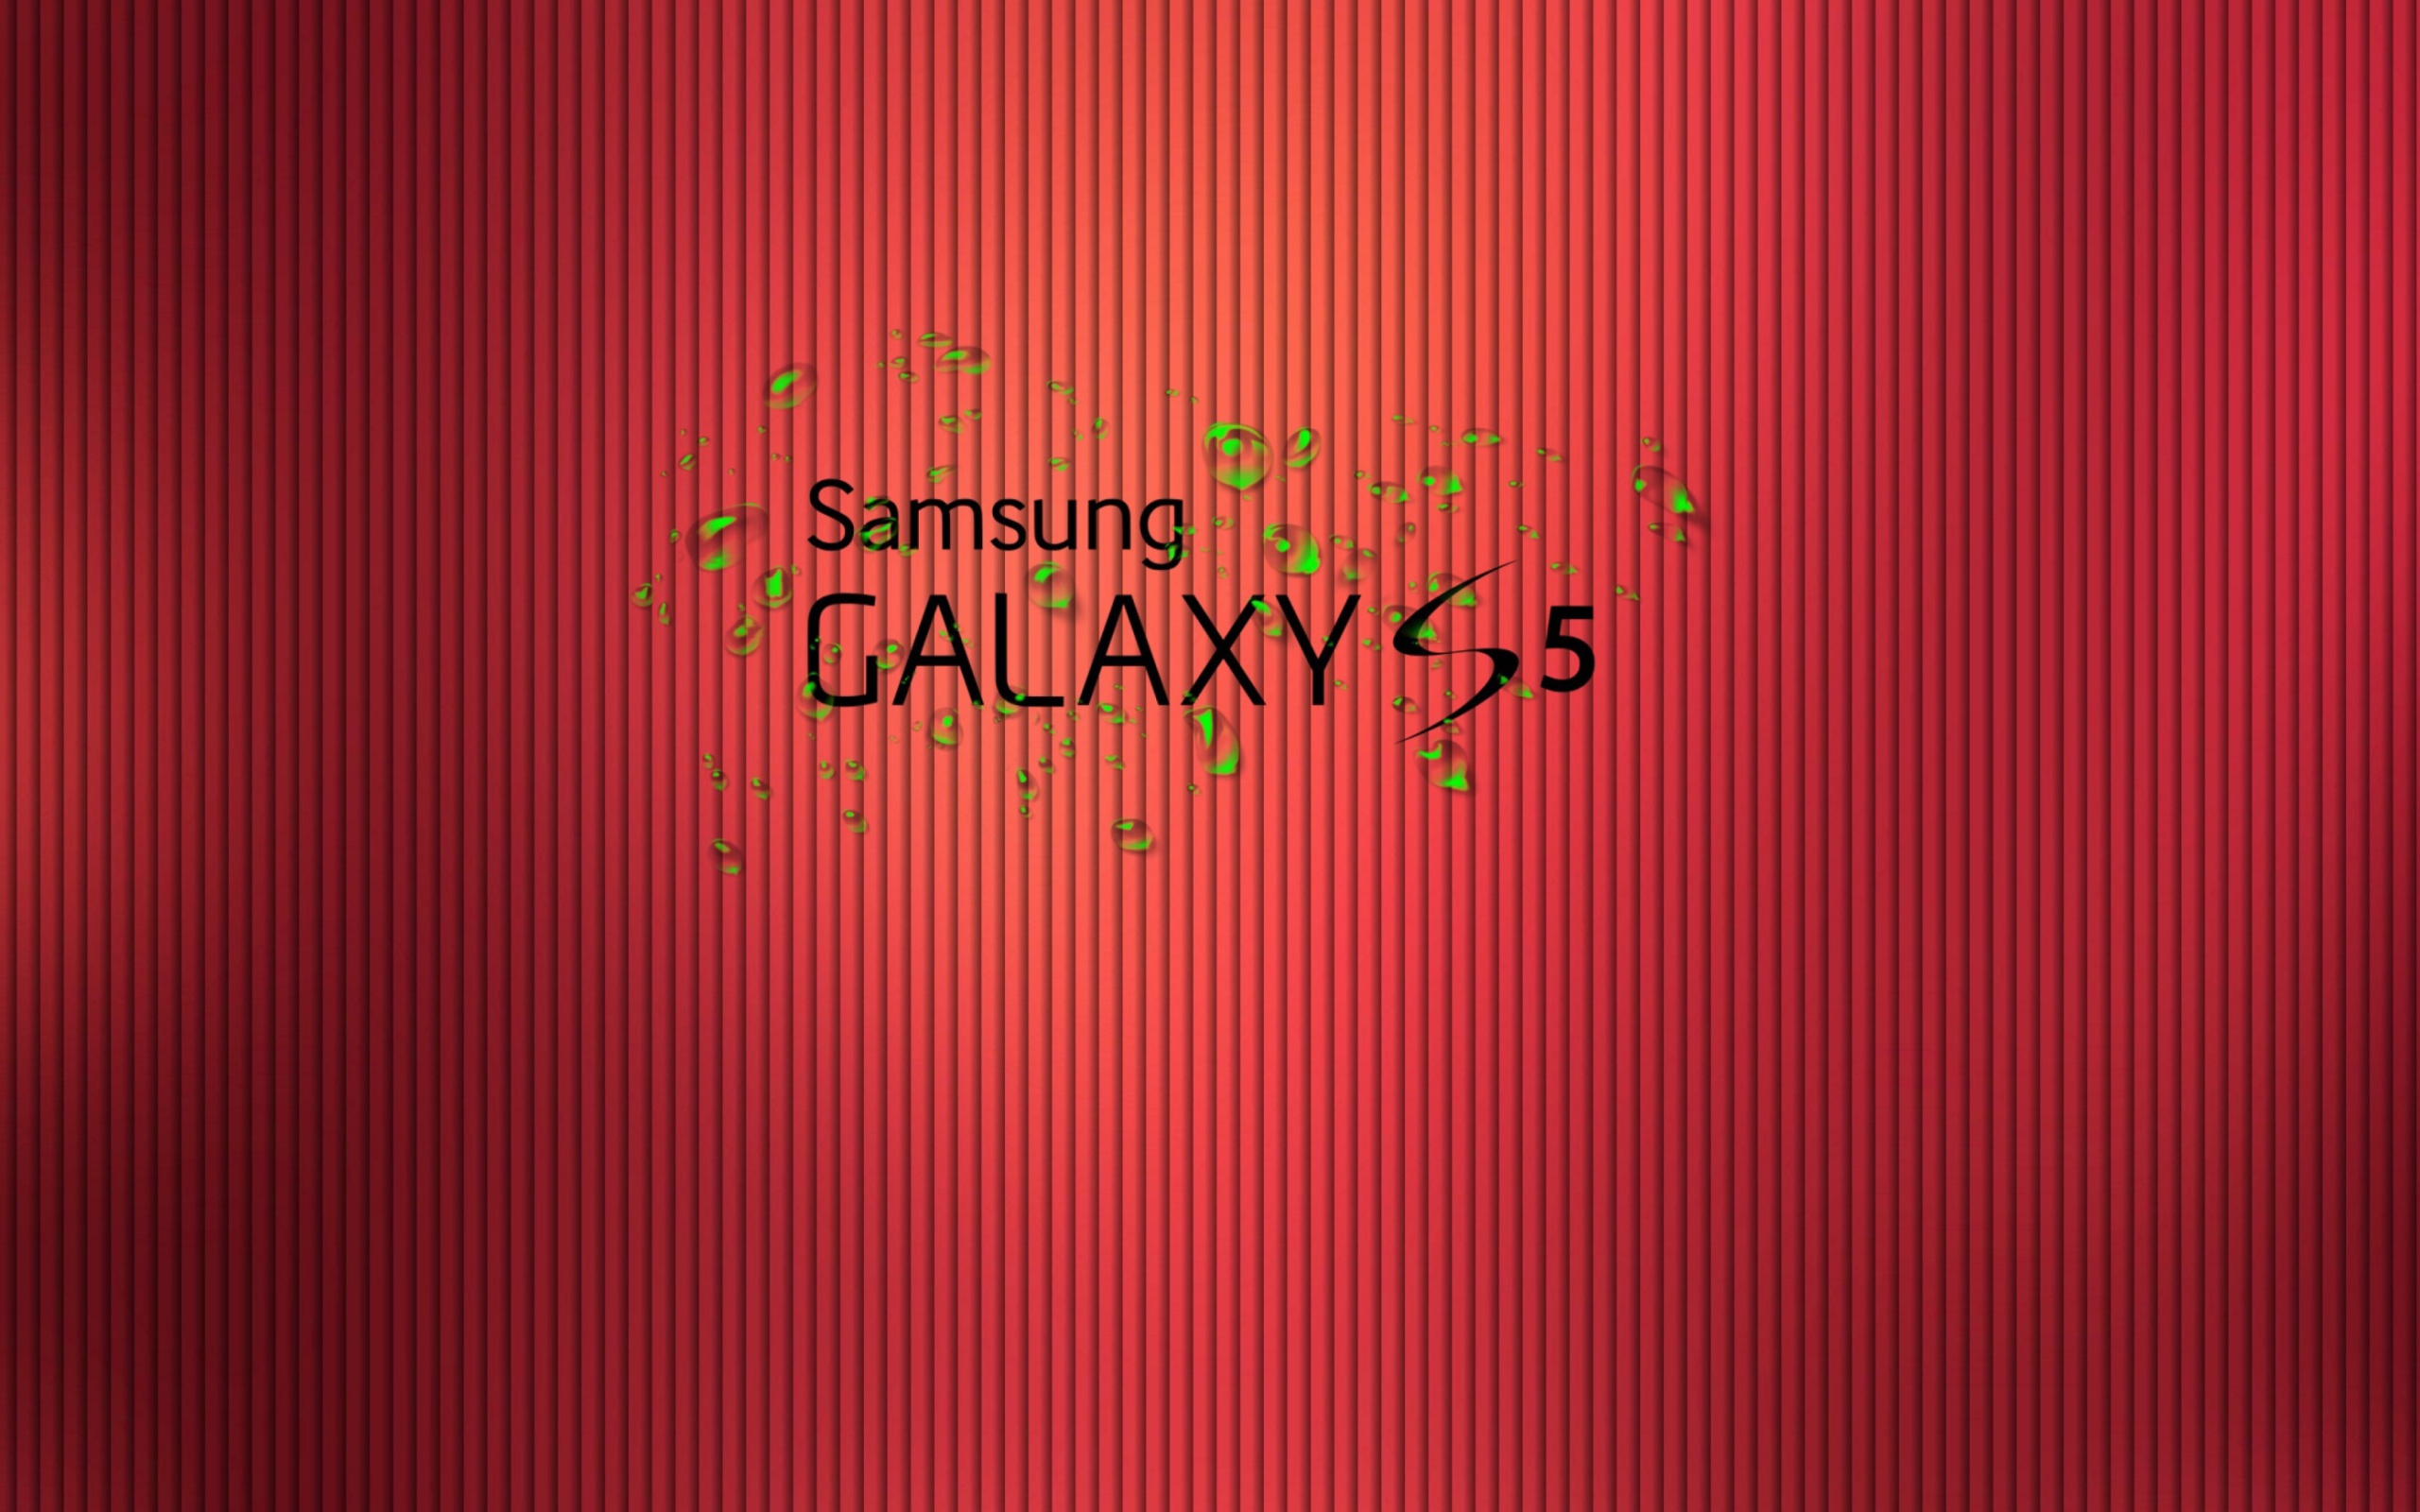 Galaxy S5 wallpaper 2560x1600